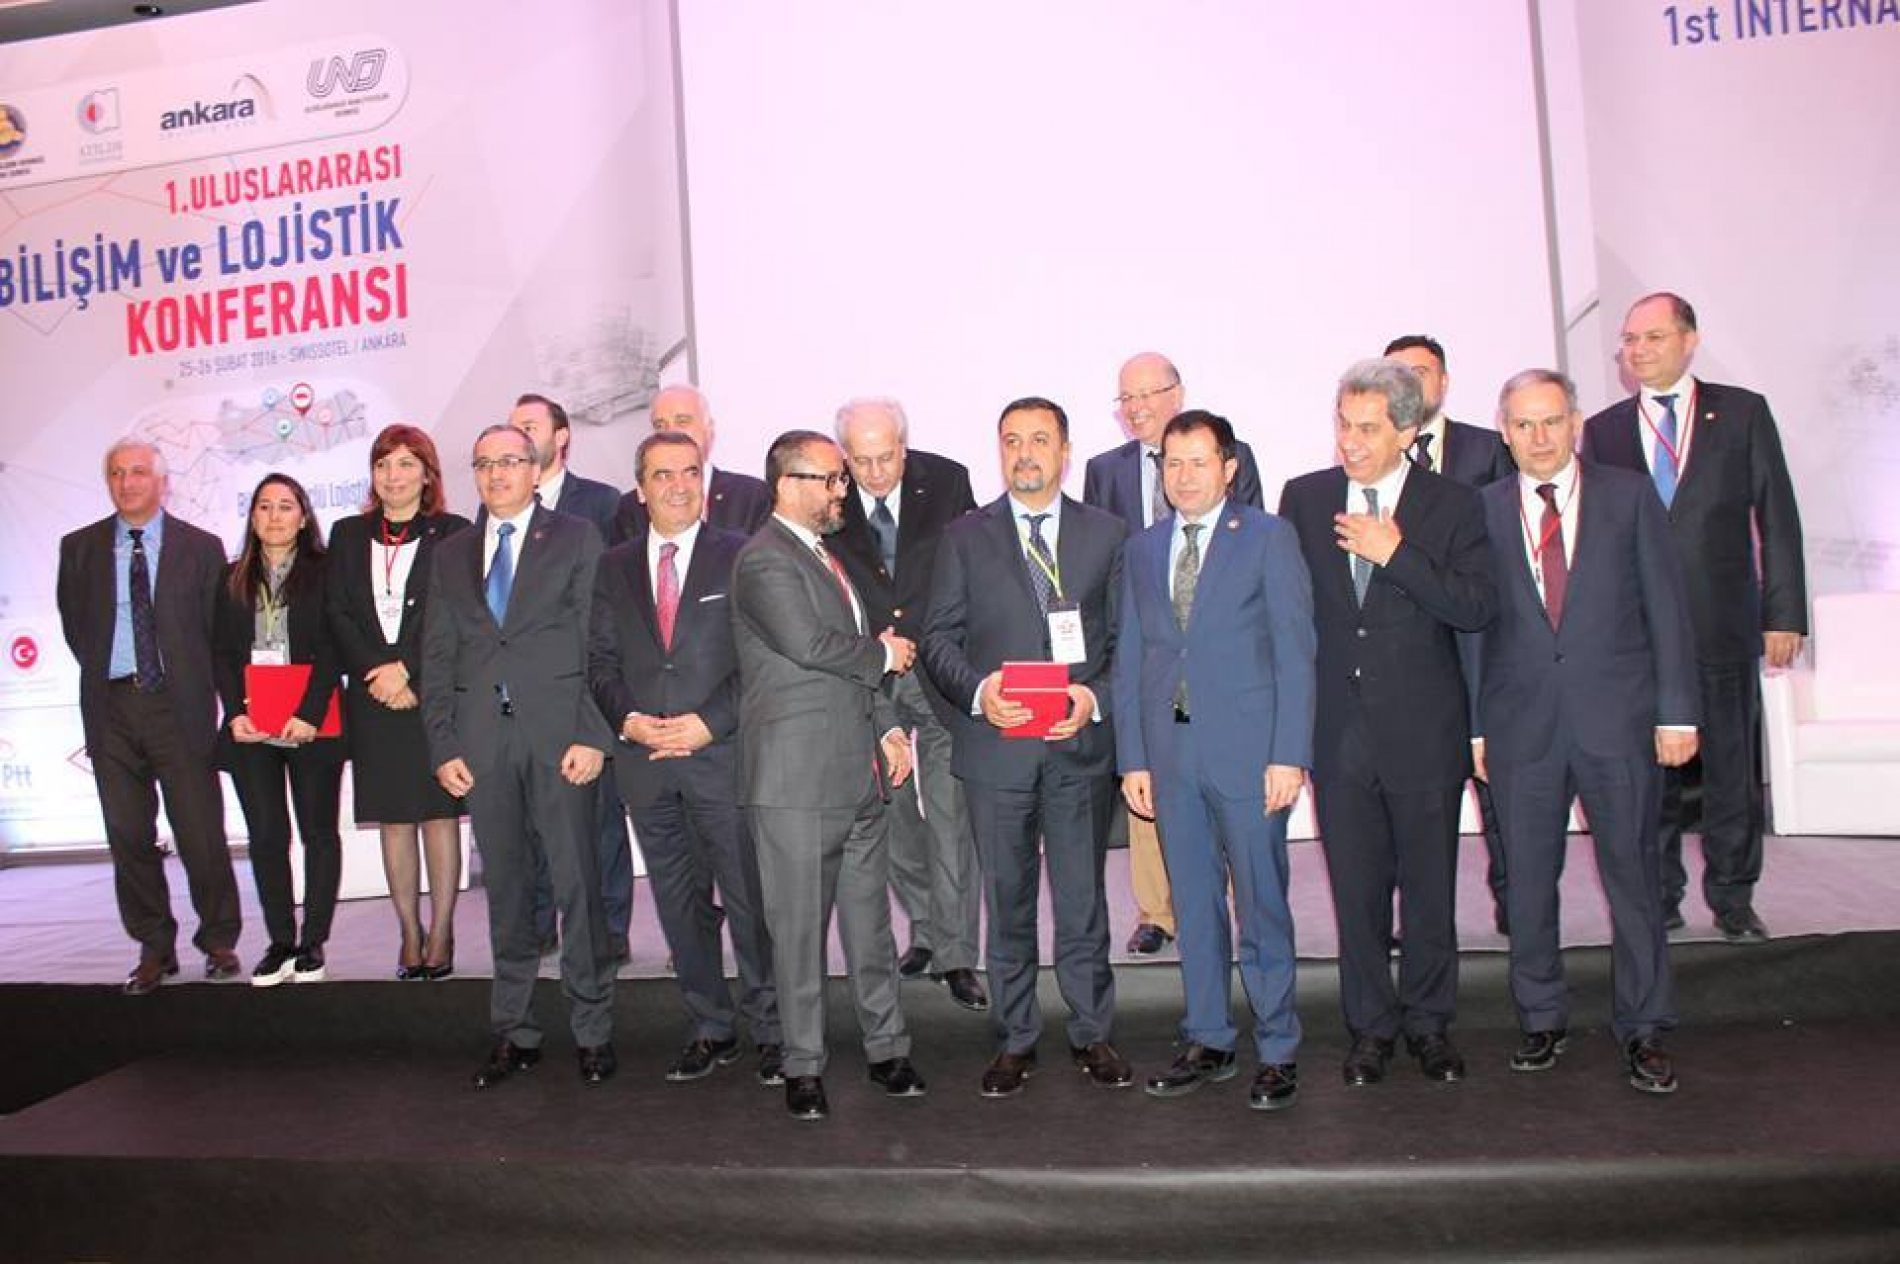 TBD Ankara Şubesi  “2. Uluslararası Bilişim ve Lojistik Konferansı” başarı ile gerçekleştirildi.